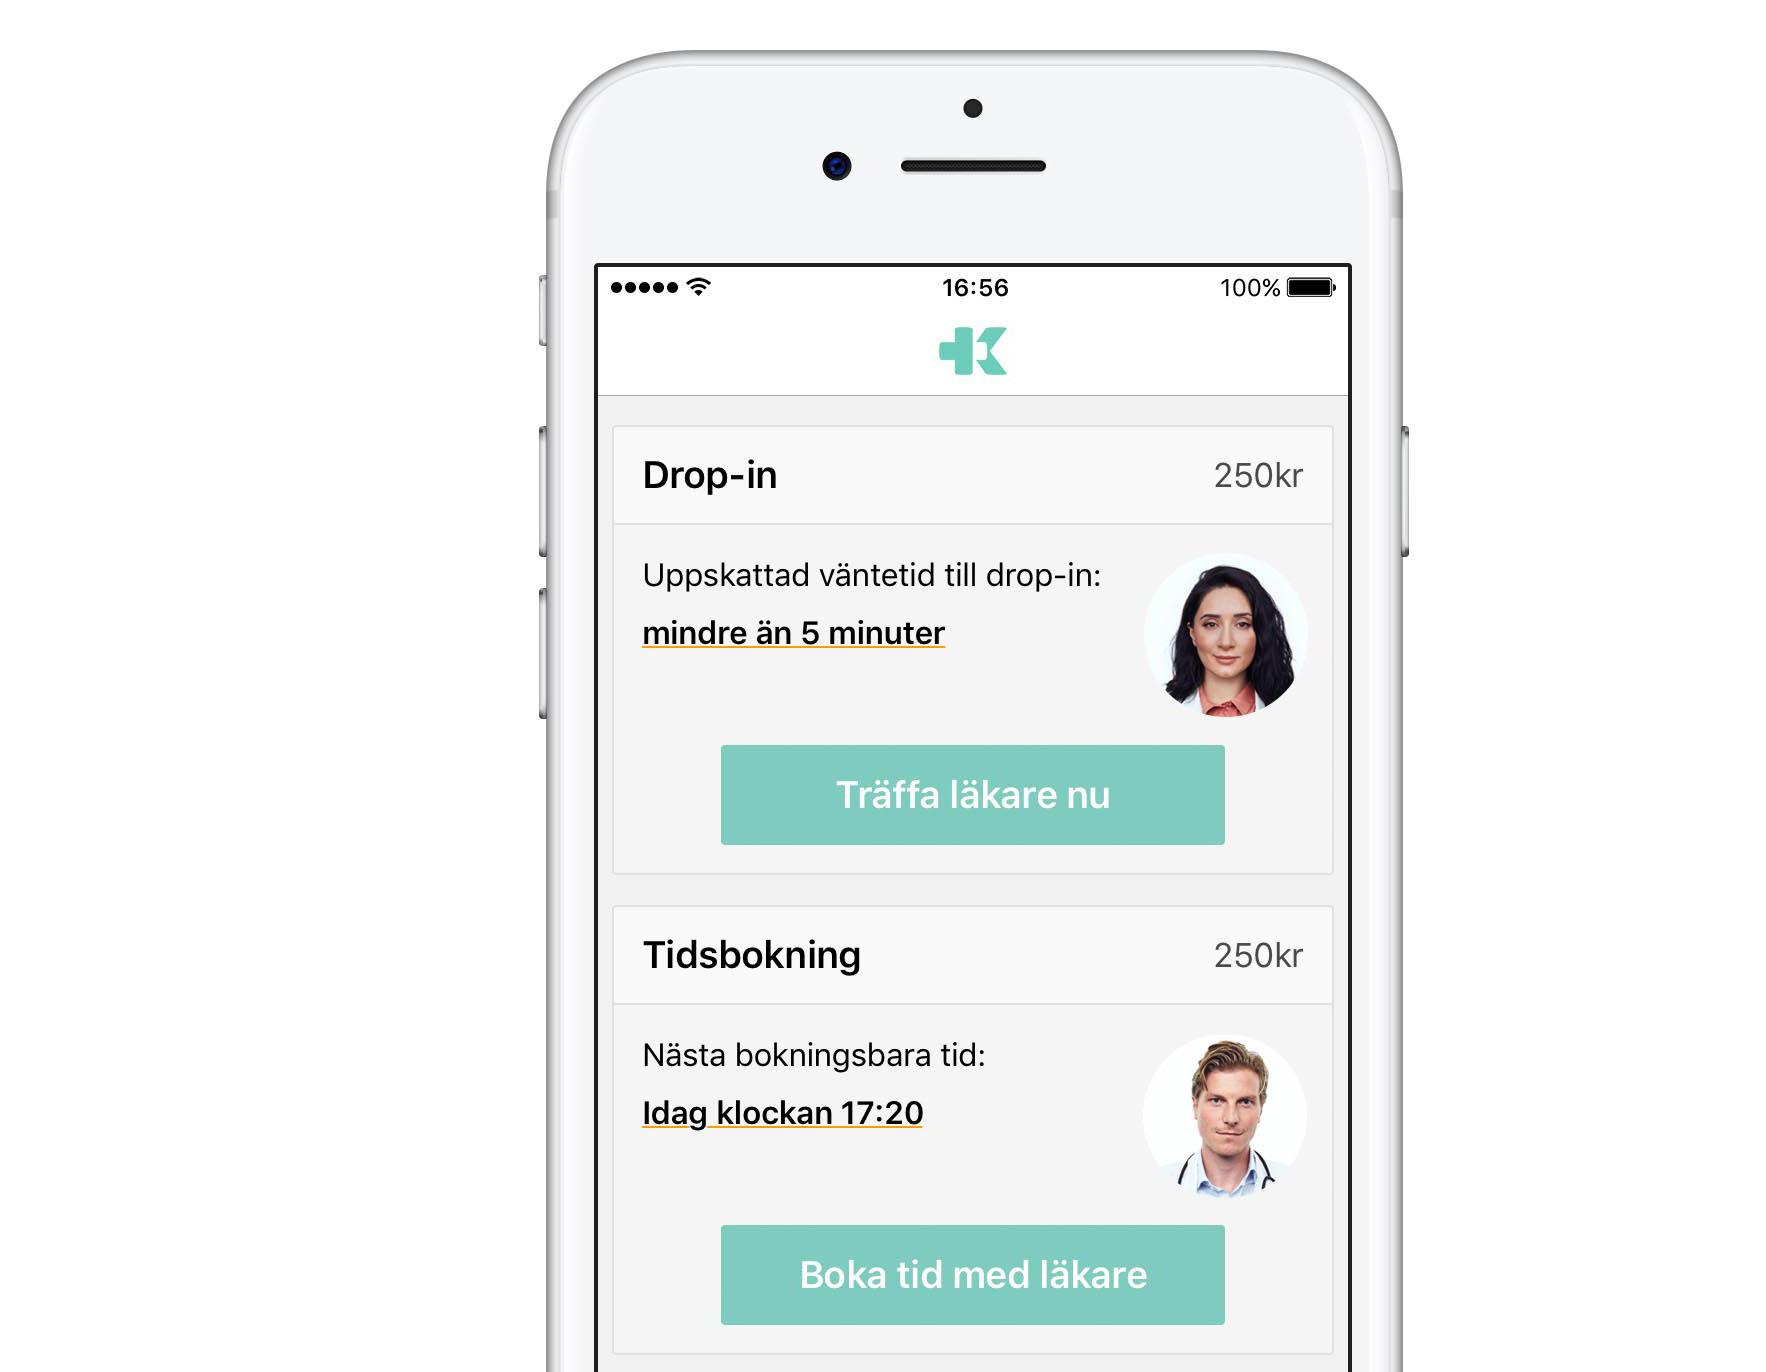 Kry tjänar stora pengar på att lista friska patienter till sina vårdcentraler via sin app.